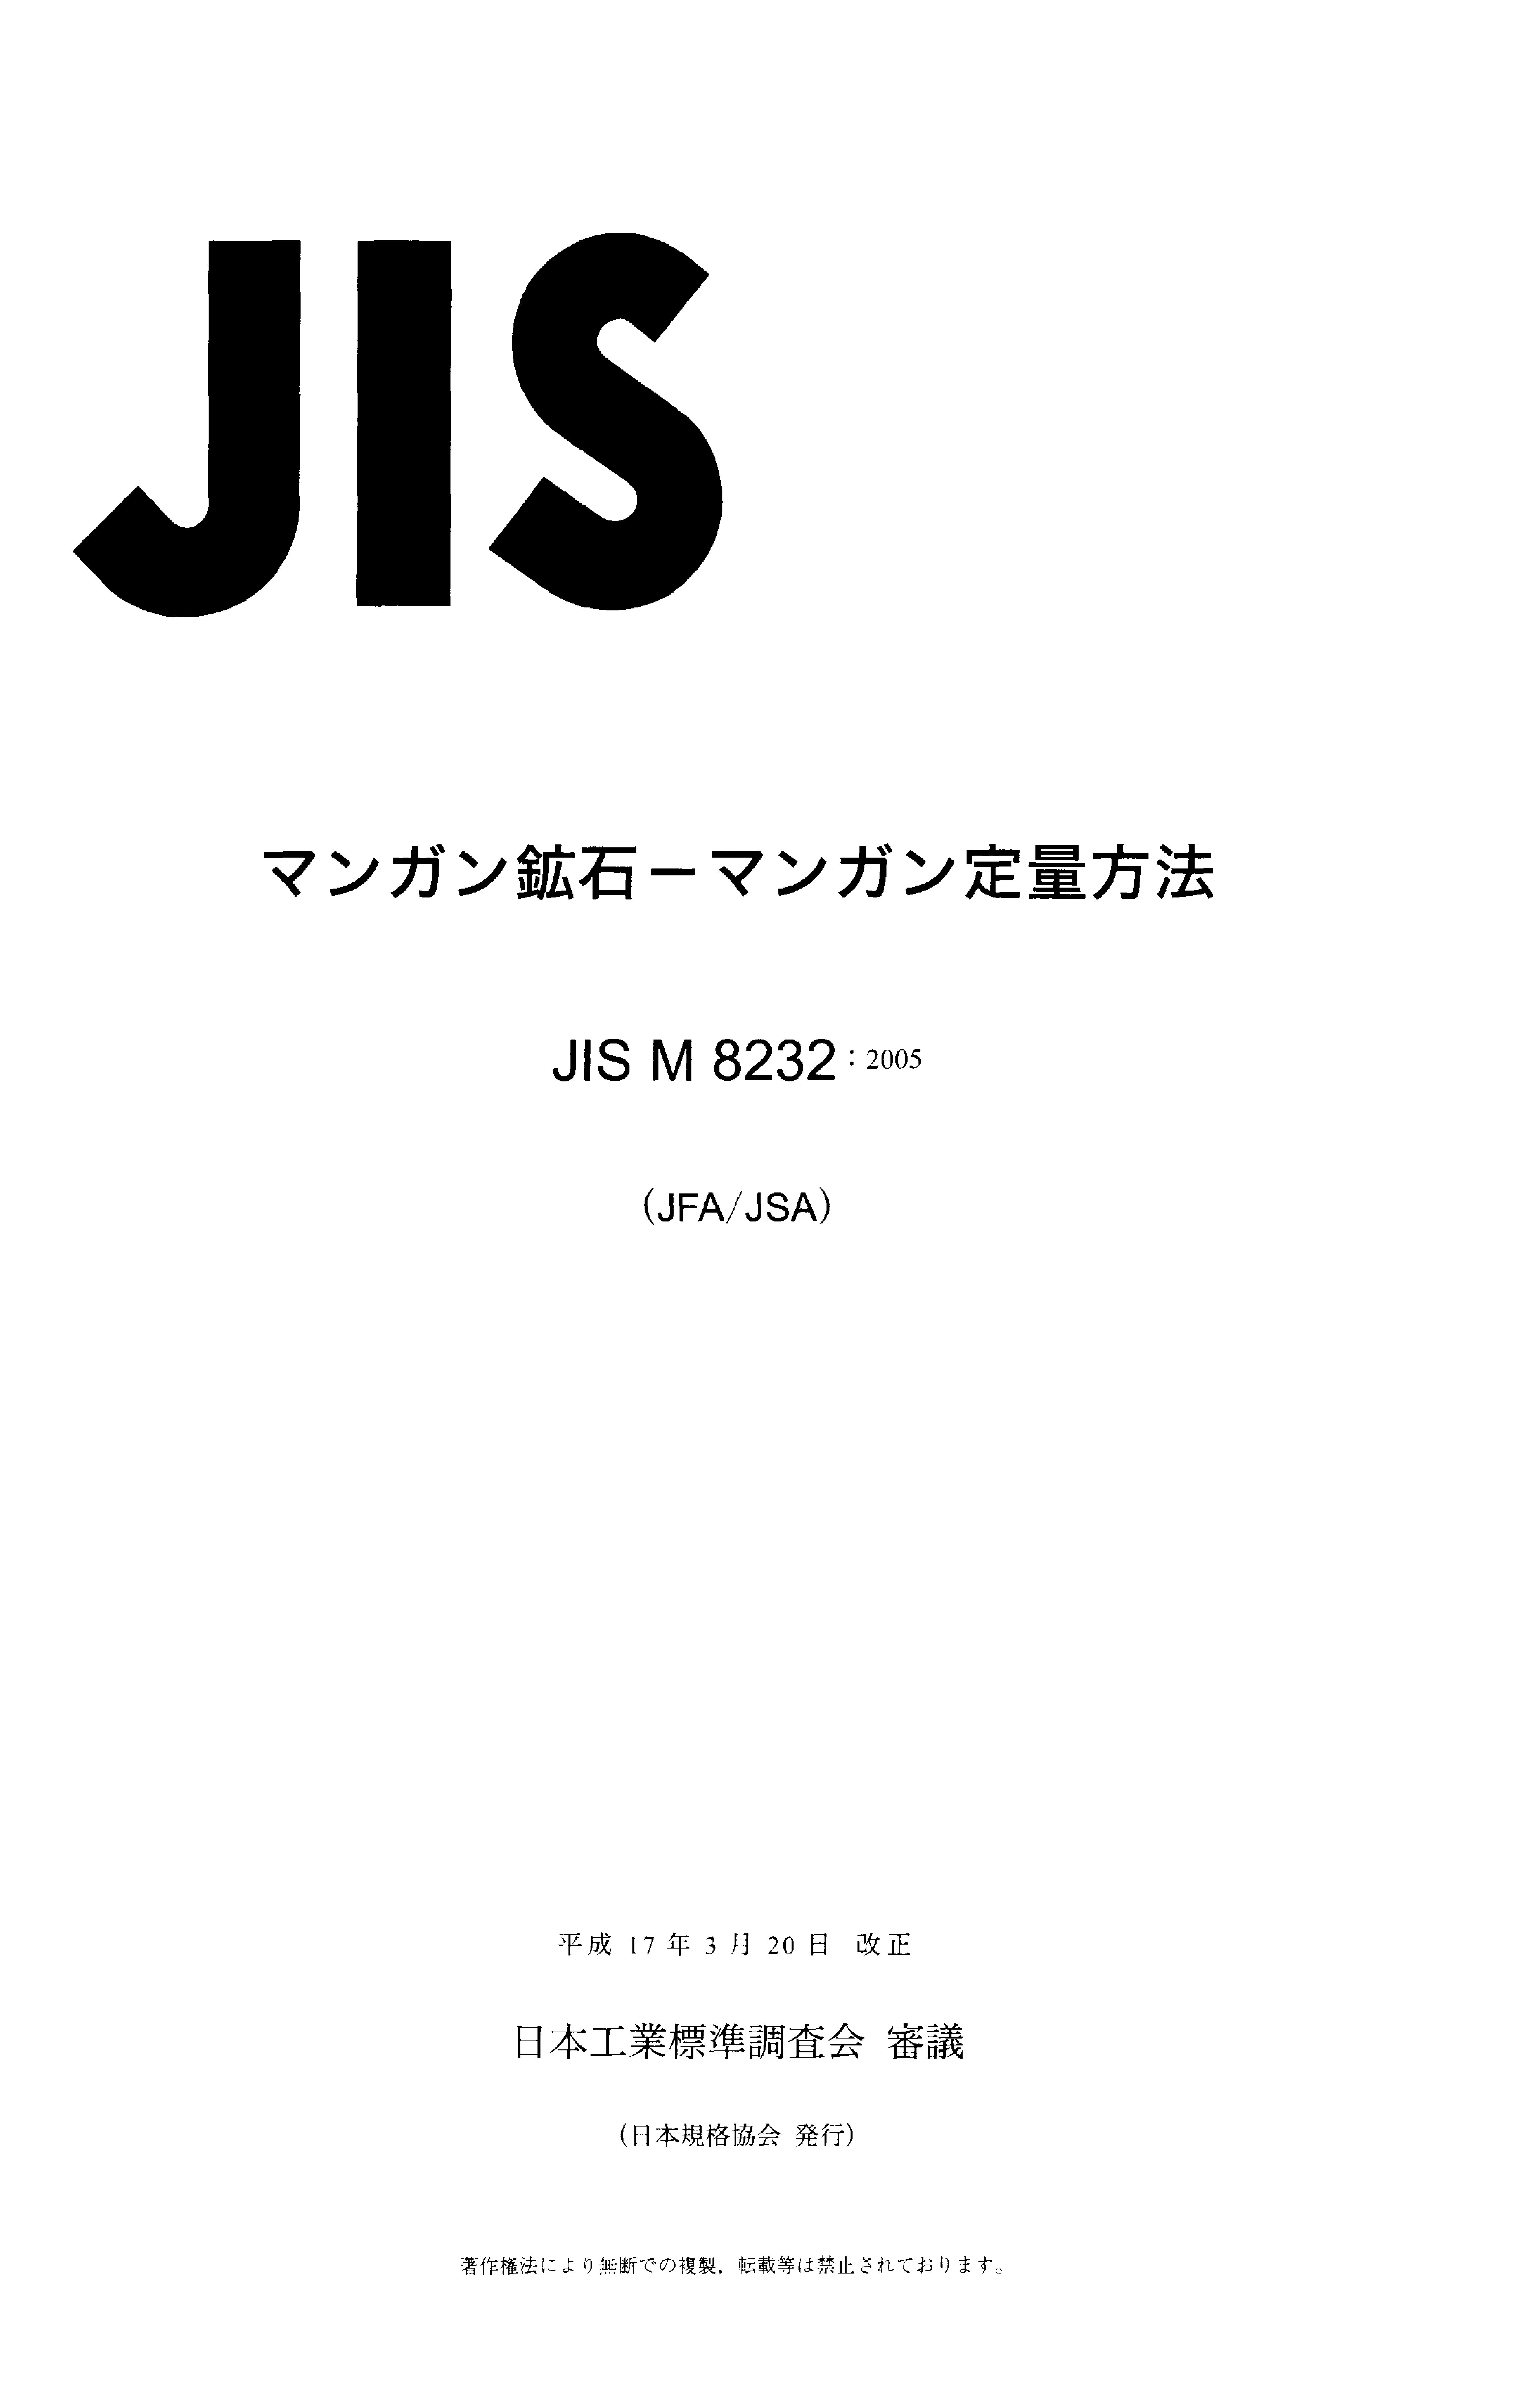 JIS M 8232:2005封面图